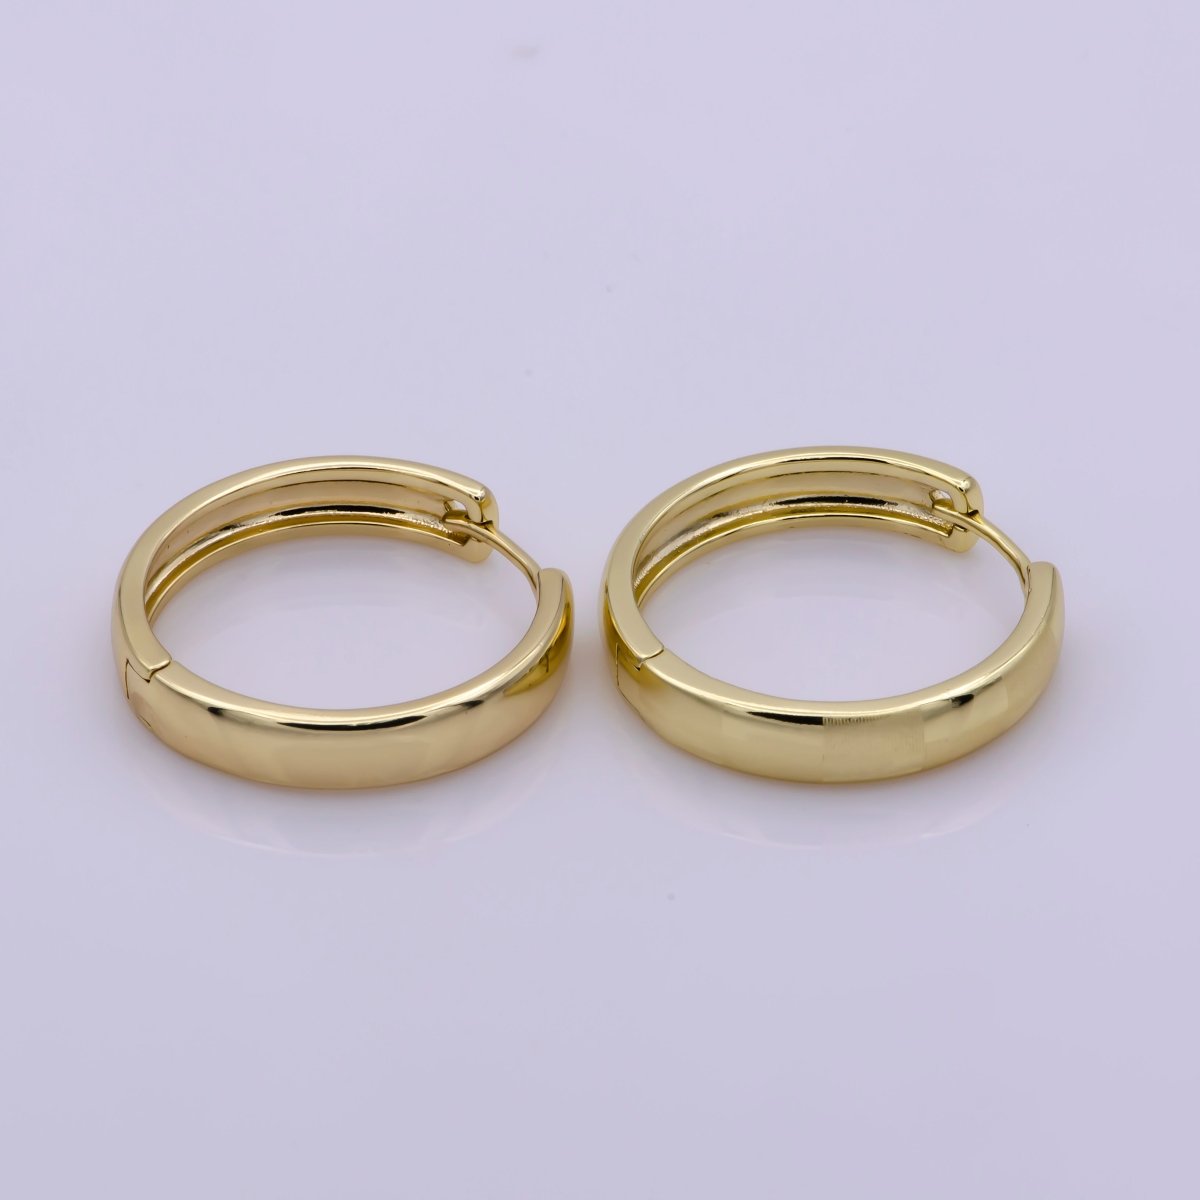 14K Gold Fill Hoop Earring 25mm Round Checker Earring Minimalist Jewelry Gift Idea T-191 - DLUXCA